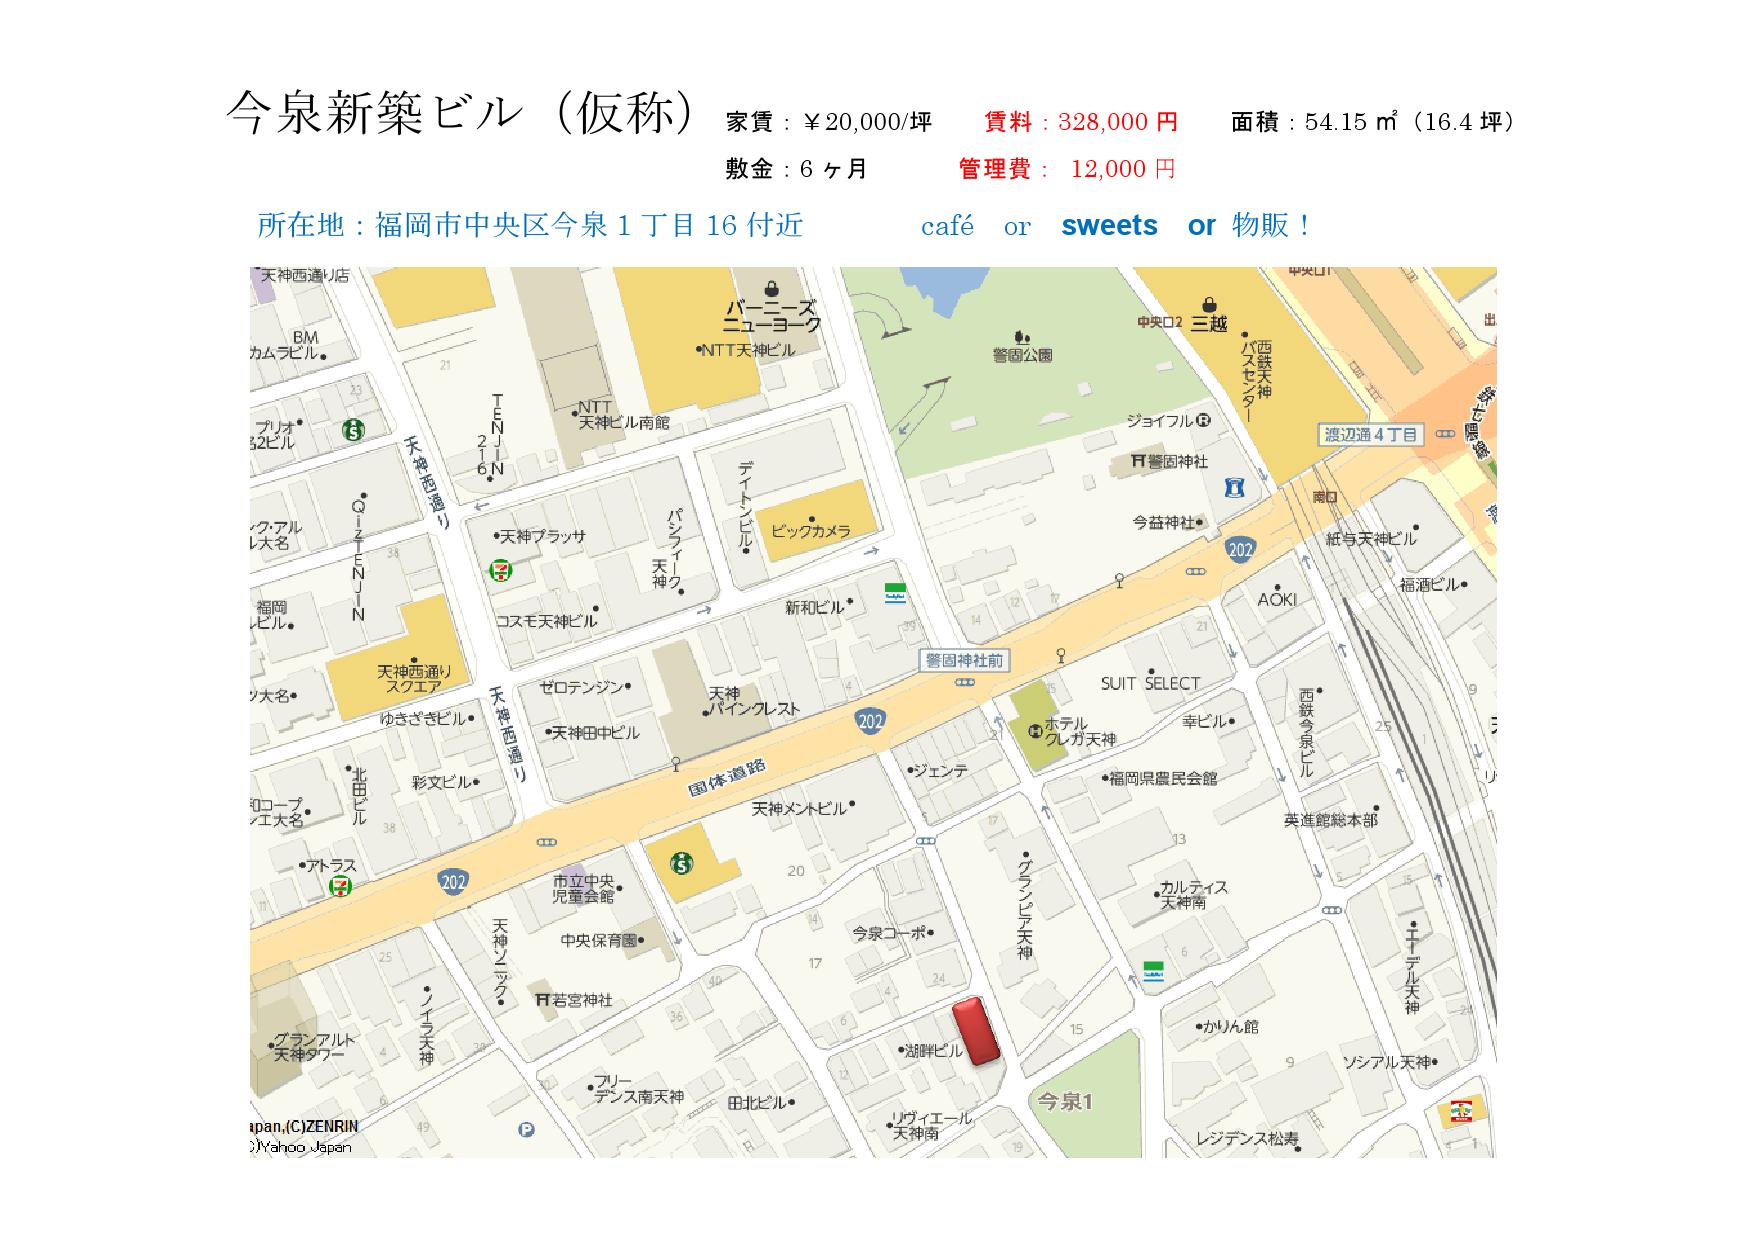 imaizumi project! map